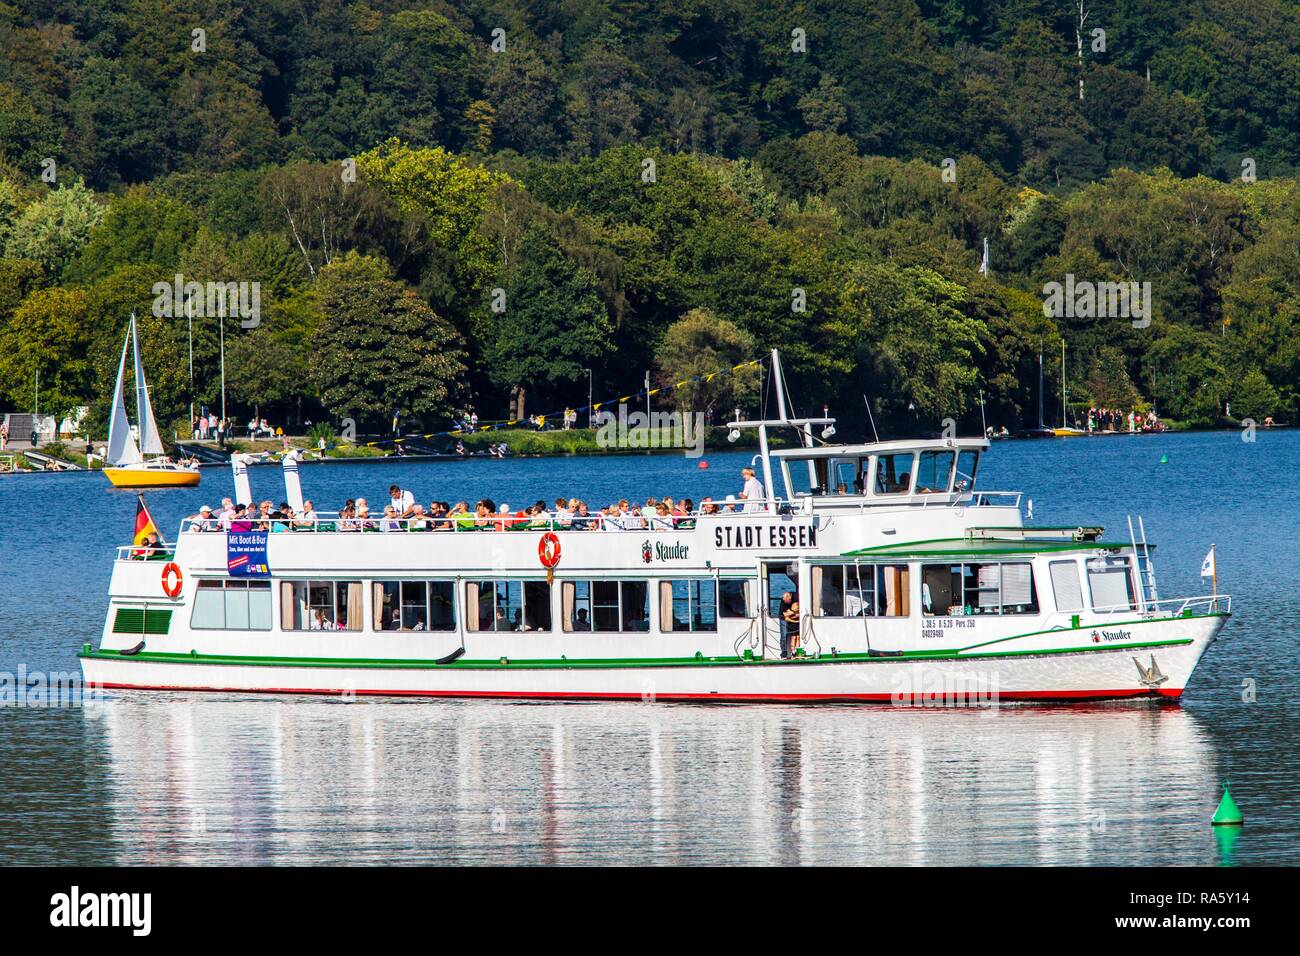 Stadt Essen pleasure boat on Lake Baldeneysee, Weißen Flotte Essen shipping line, Essen, North Rhine-Westphalia Stock Photo